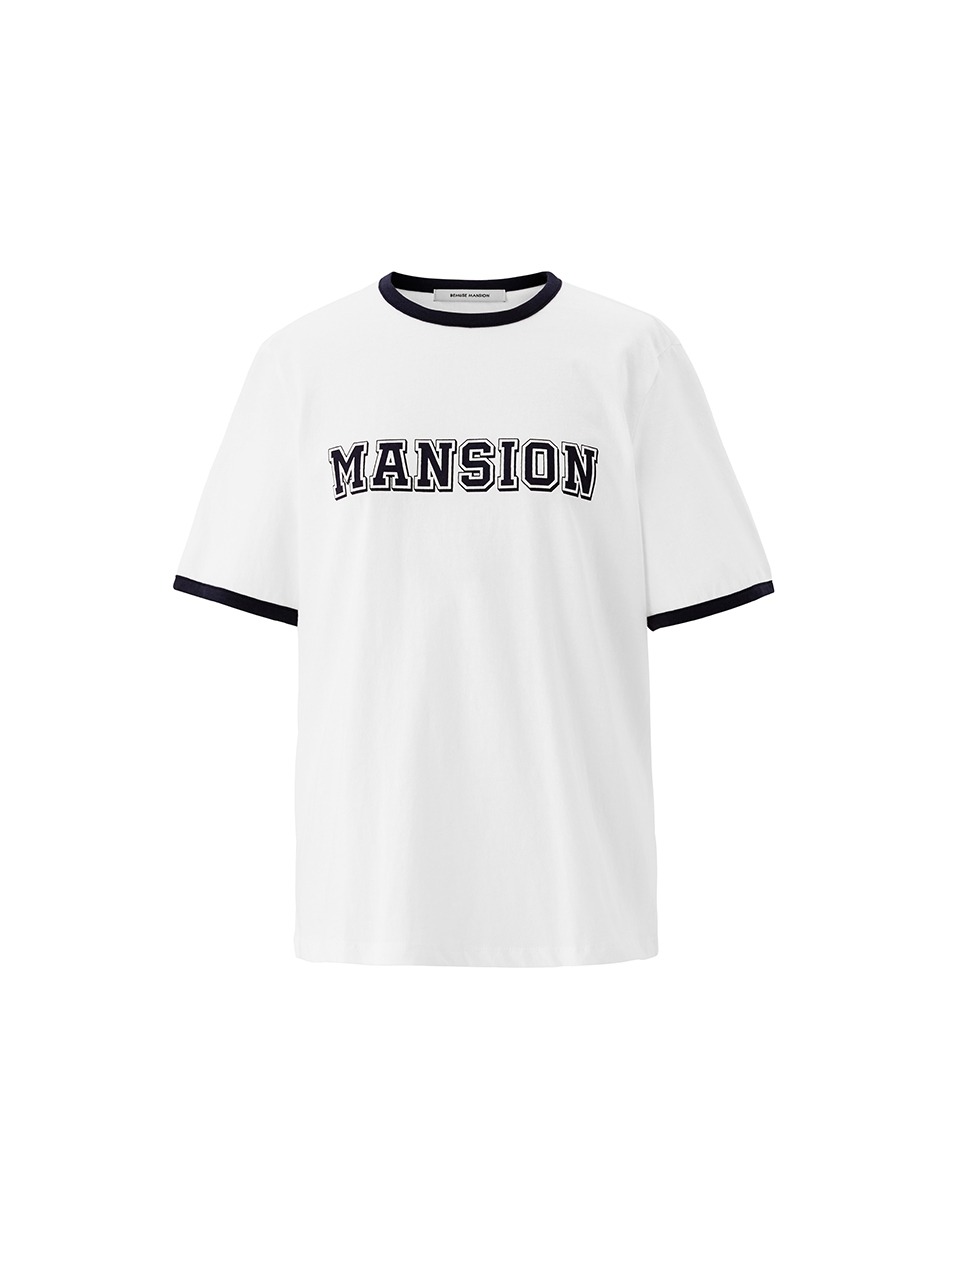 Mansion binding tee - Off white